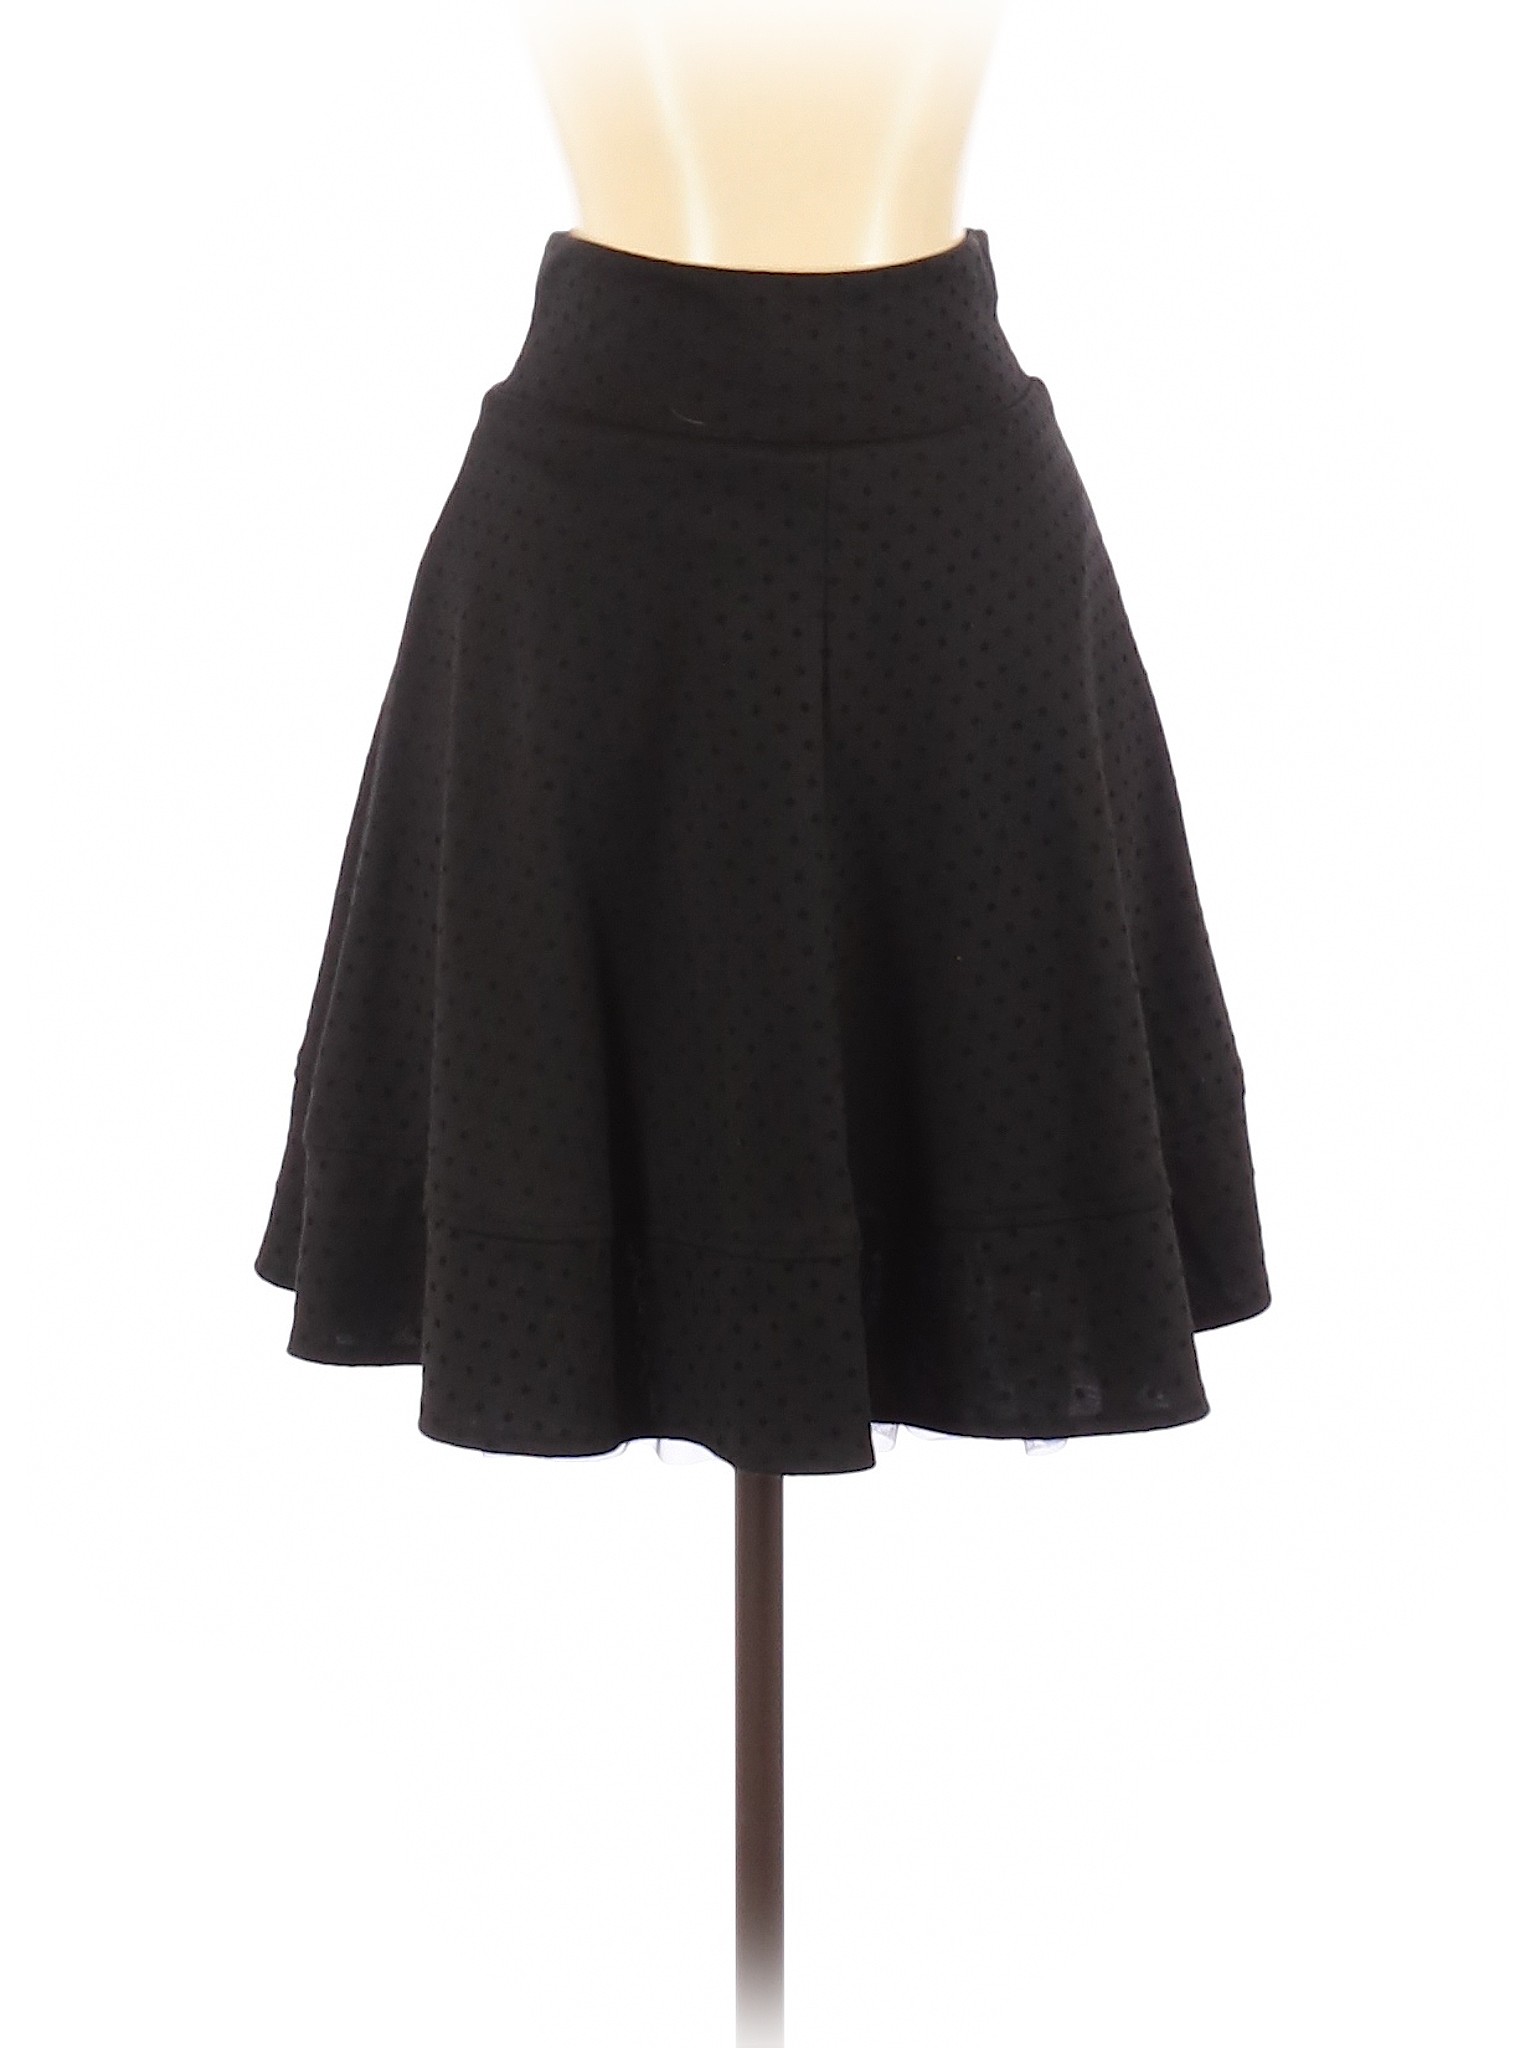 Joe B by Joe Benbasset Women Black Casual Skirt S | eBay